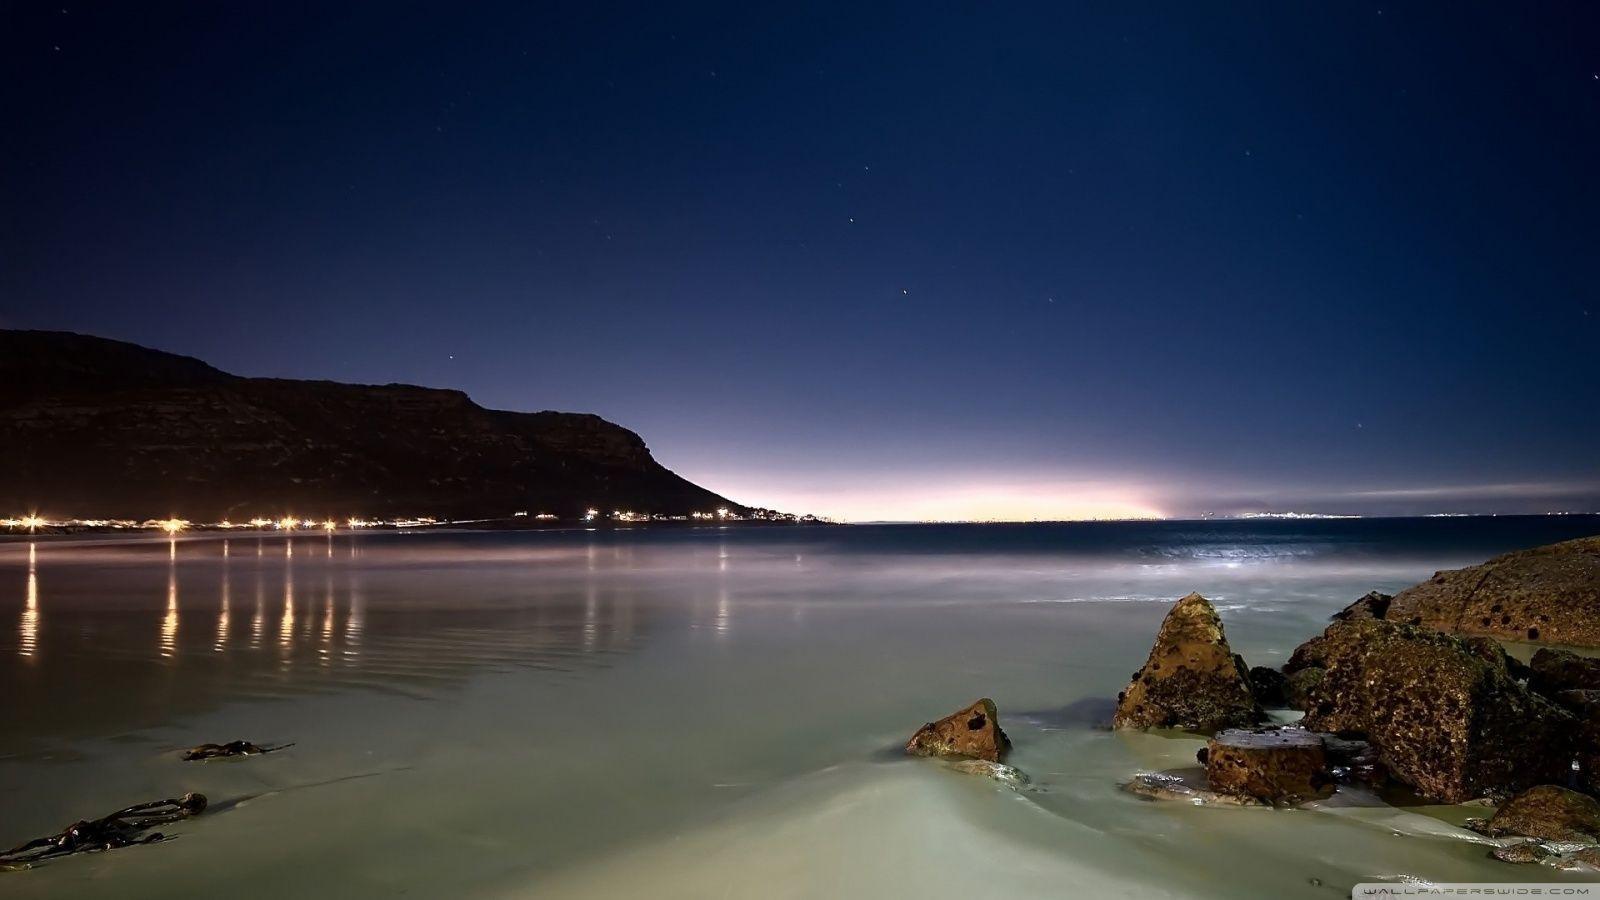 Beach At Night HD desktop wallpaper, High Definition, Fullscreen